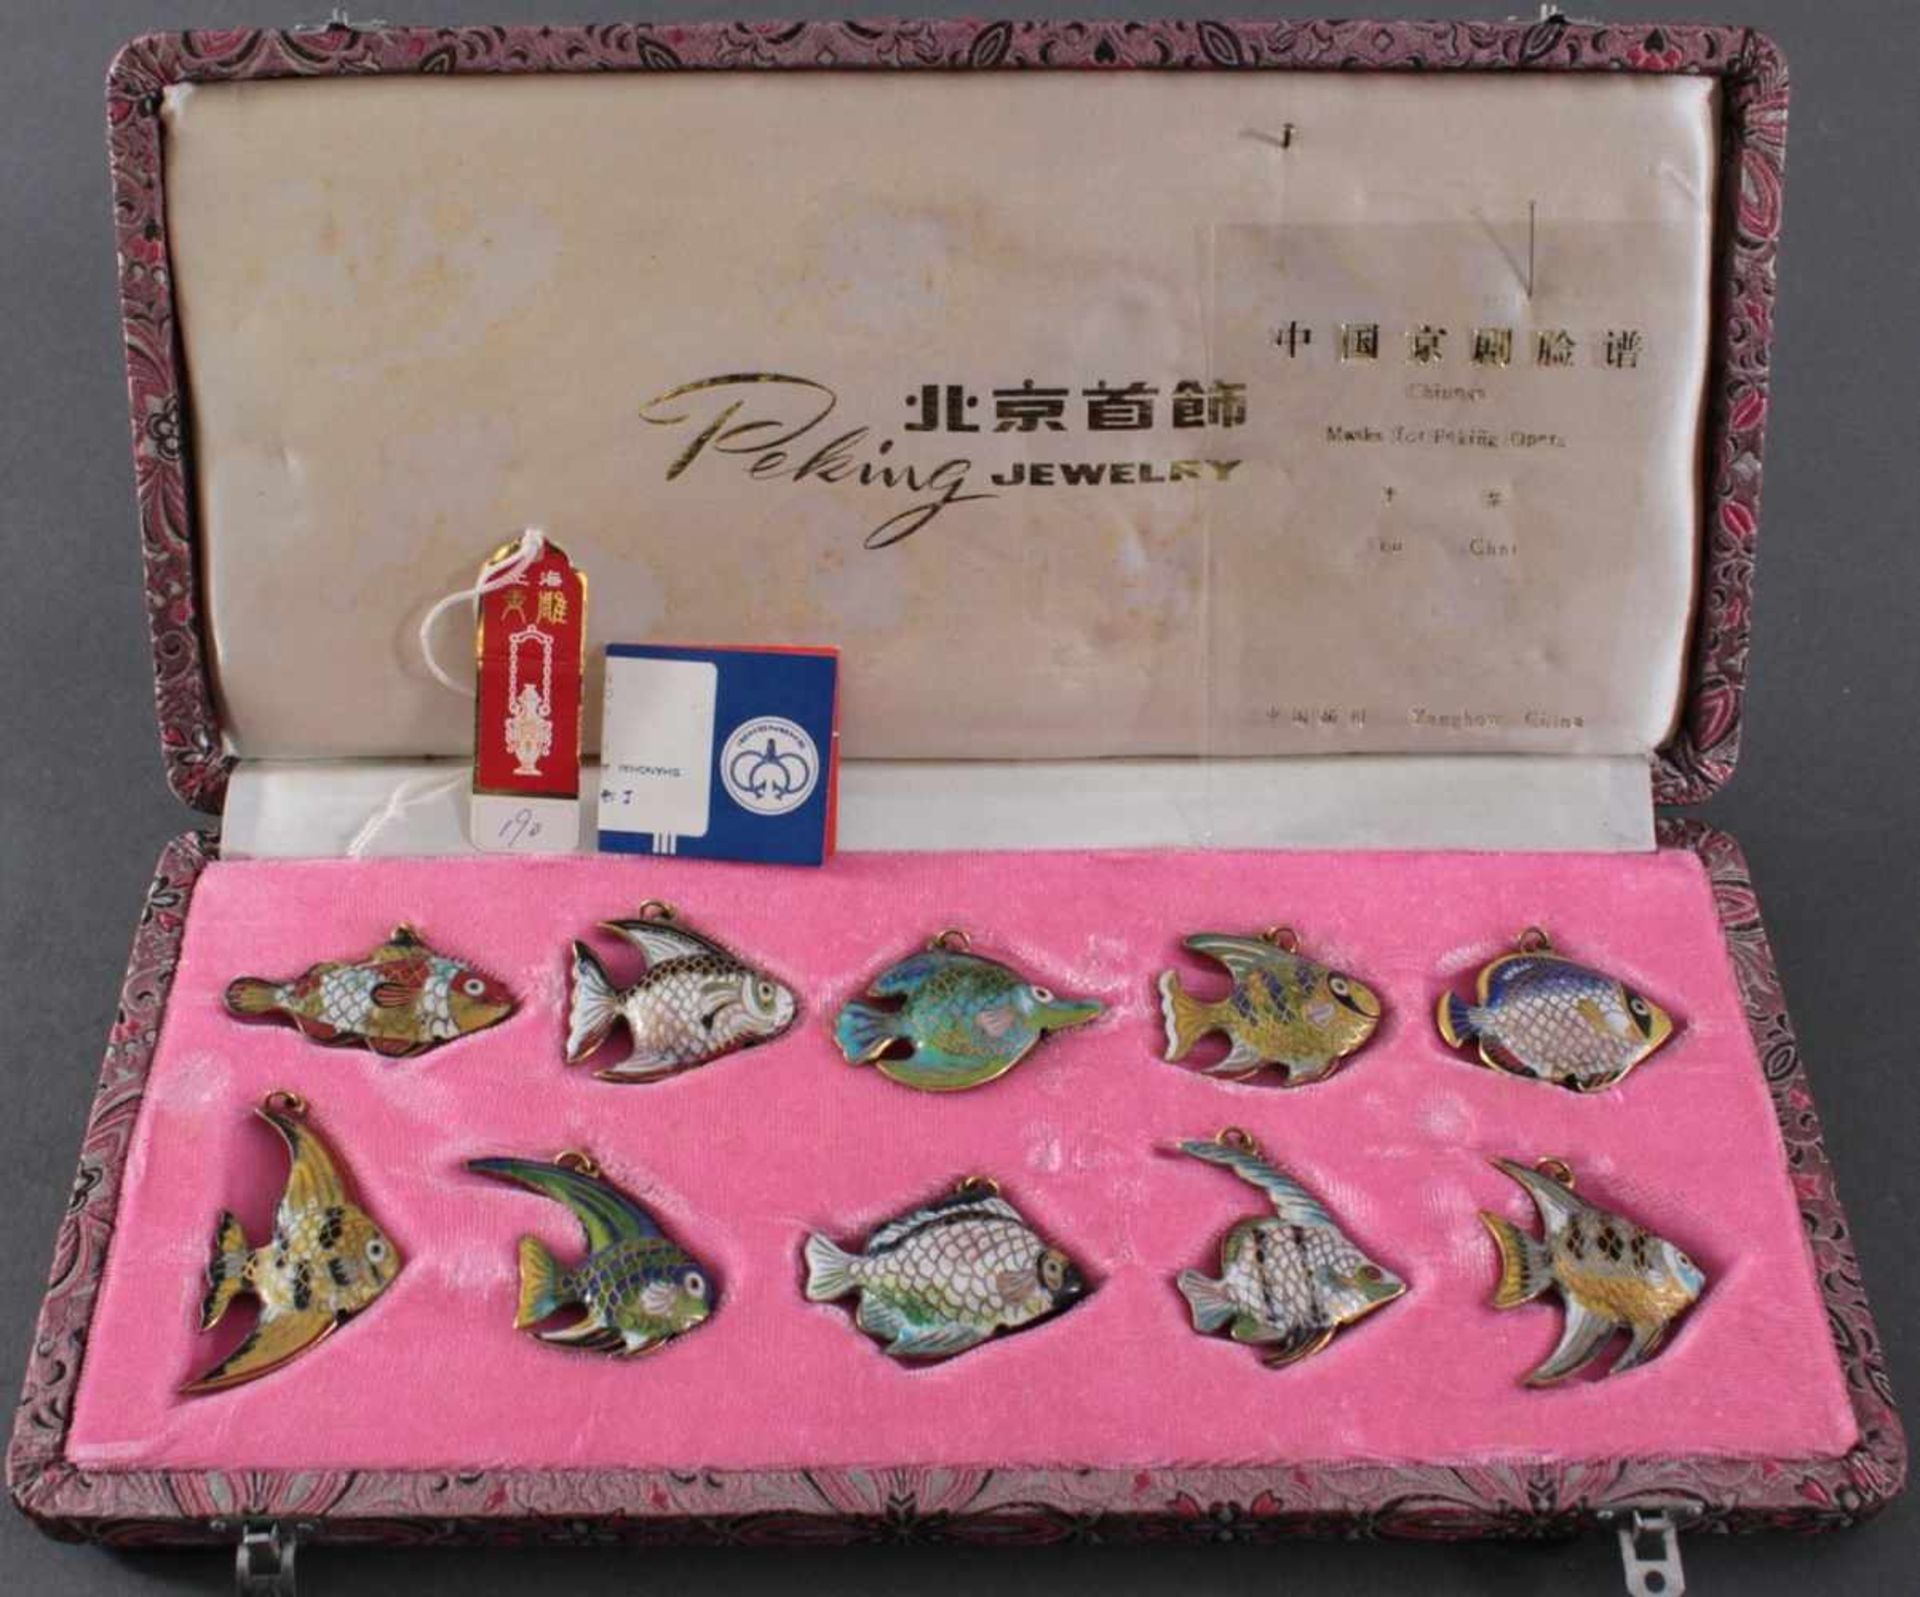 Cloisonne Fische, China 20. Jh10 verschiedene Fische in buntem Email, in Stoffbezogener Schatulle,